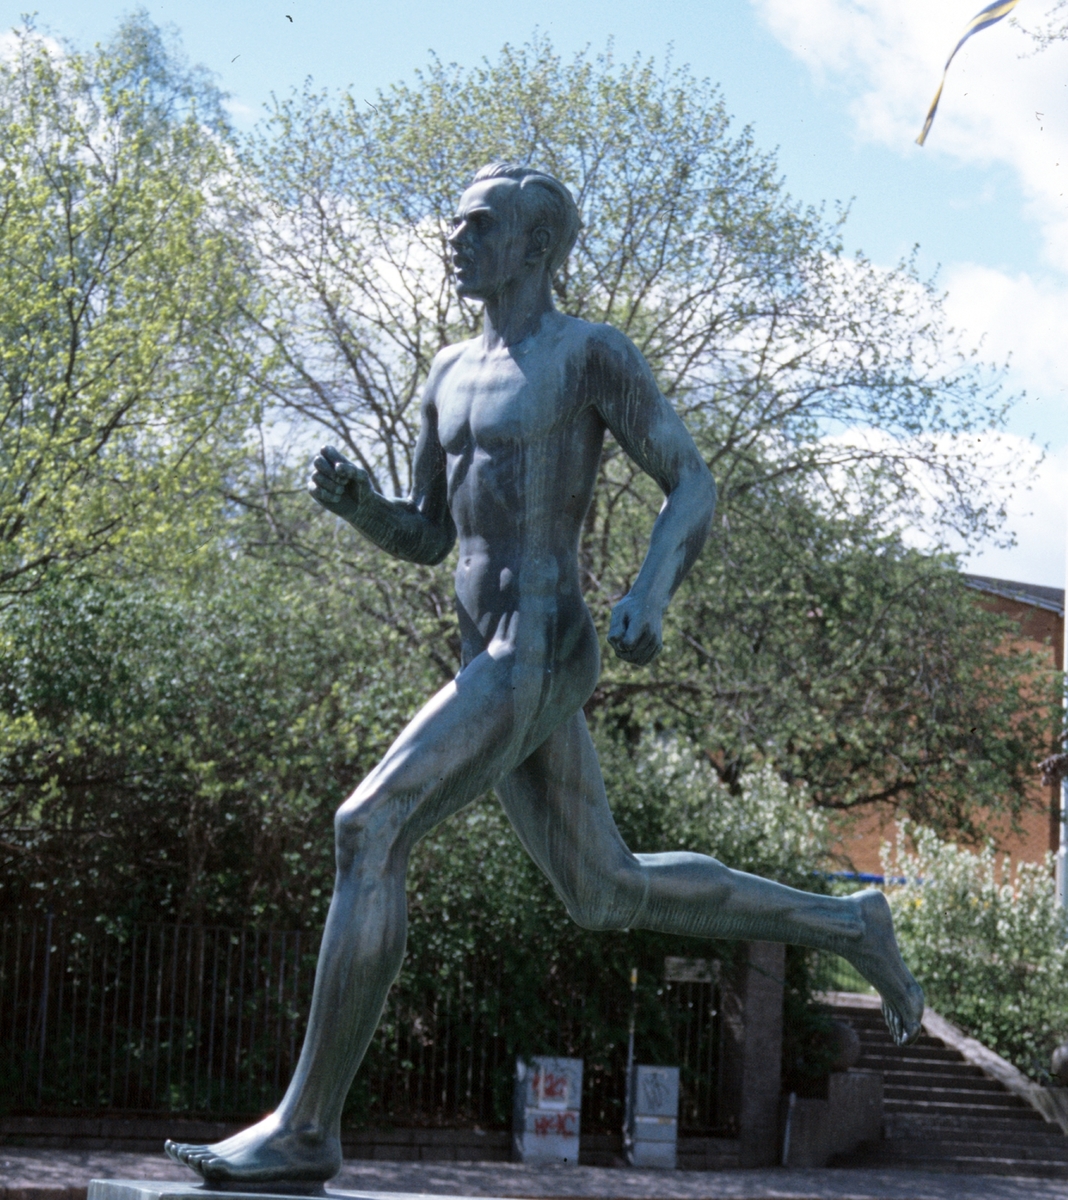 Staty "Löparen" av konstnären Olof Ahlberg.